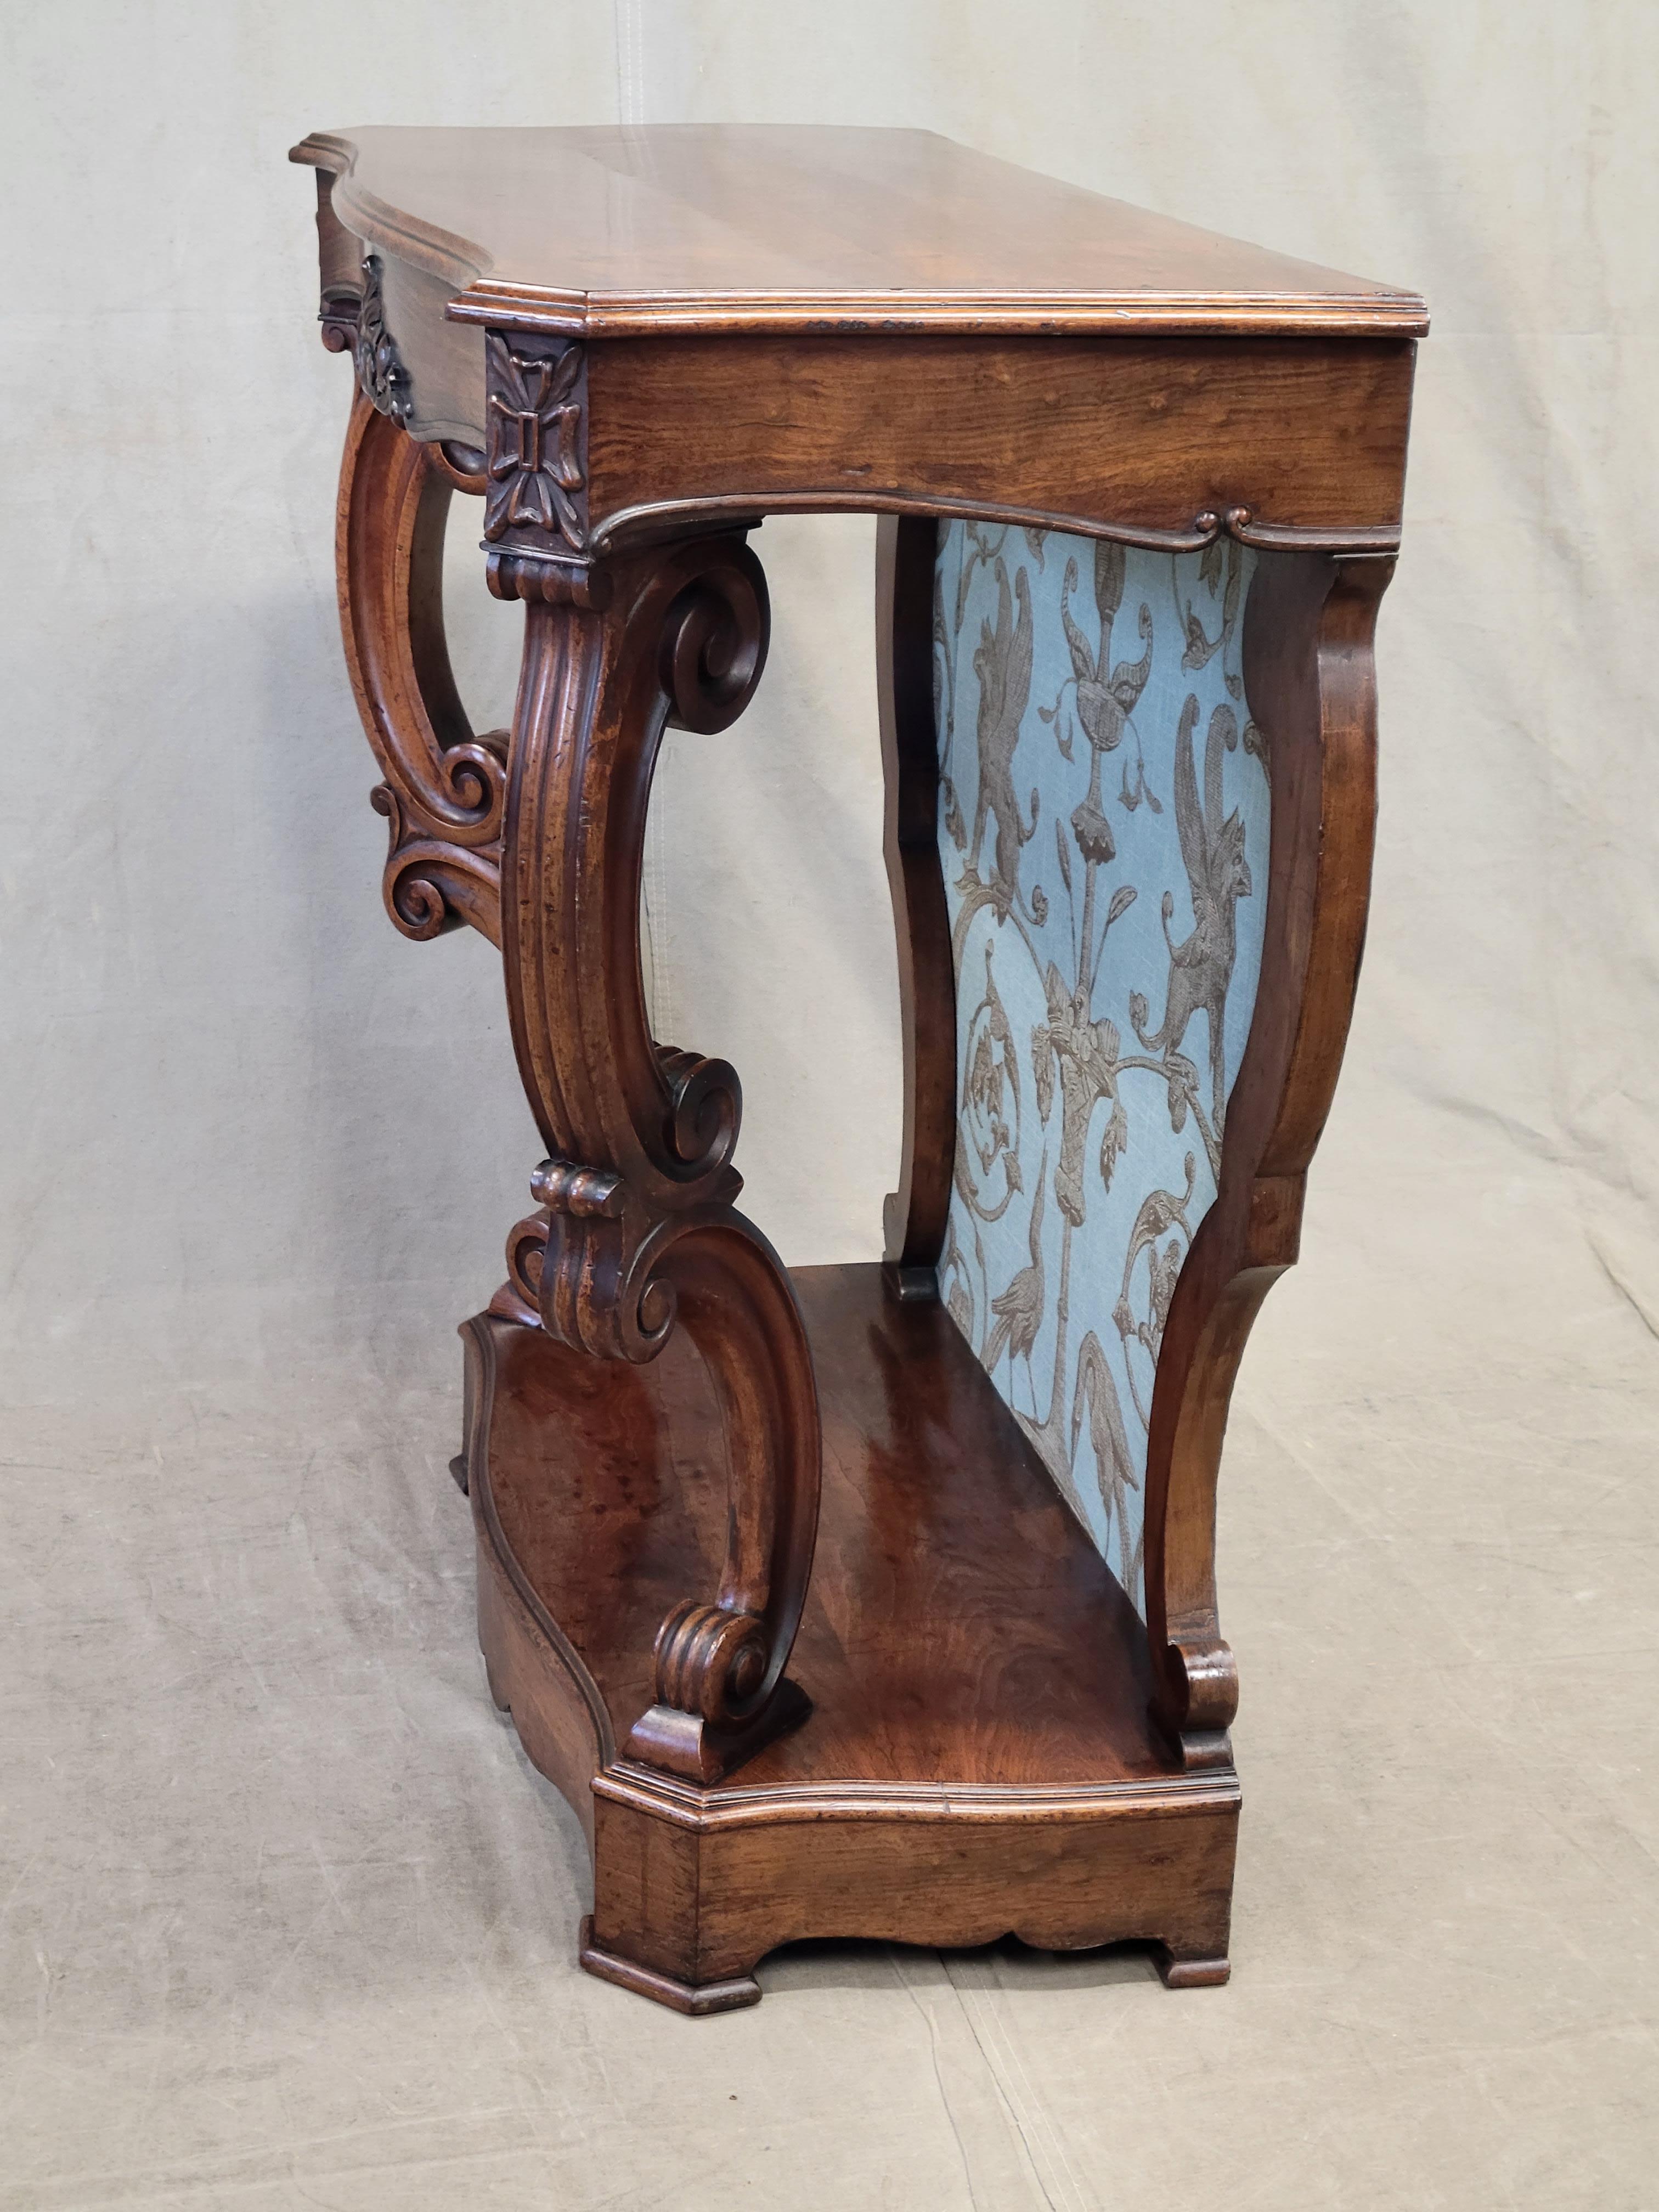 Antique Louis Phillipe Console Table with Thibaut Renaissance Fabric Panel 2